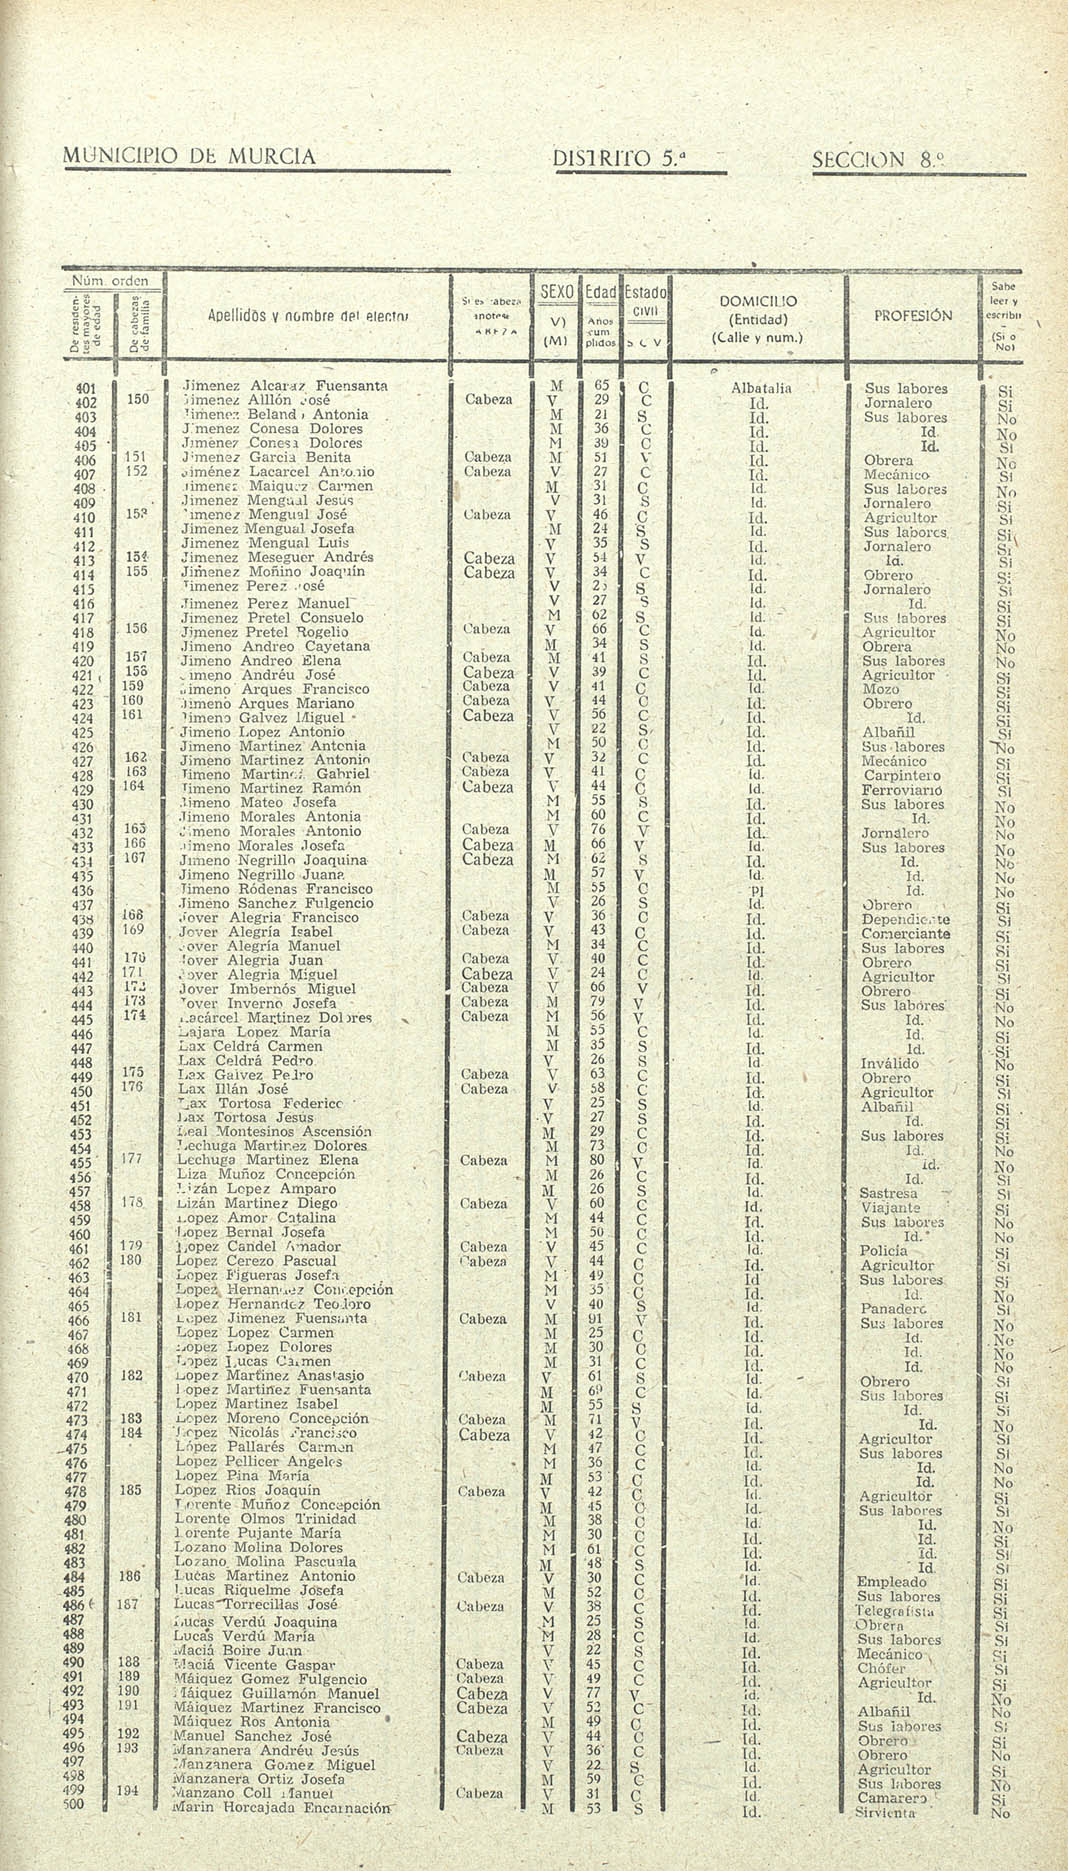 Censo electoral provincial de 1955. Volumen III: De Murcia (distrito 4º) a Yecla